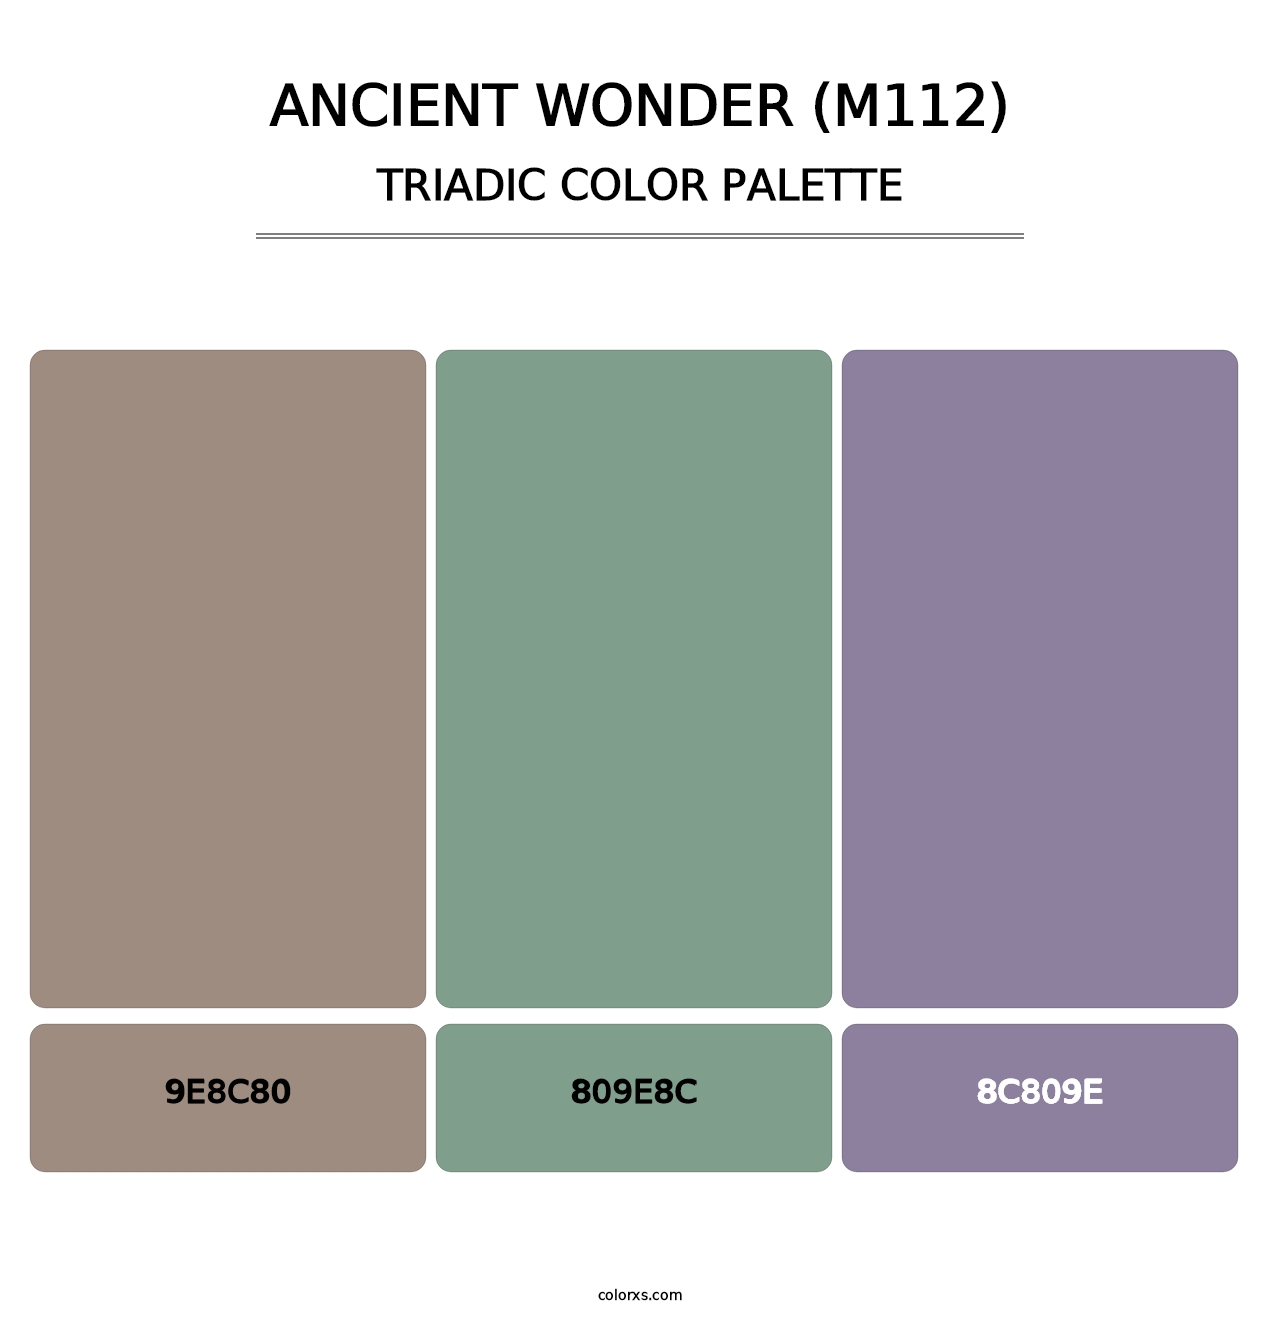 Ancient Wonder (M112) - Triadic Color Palette